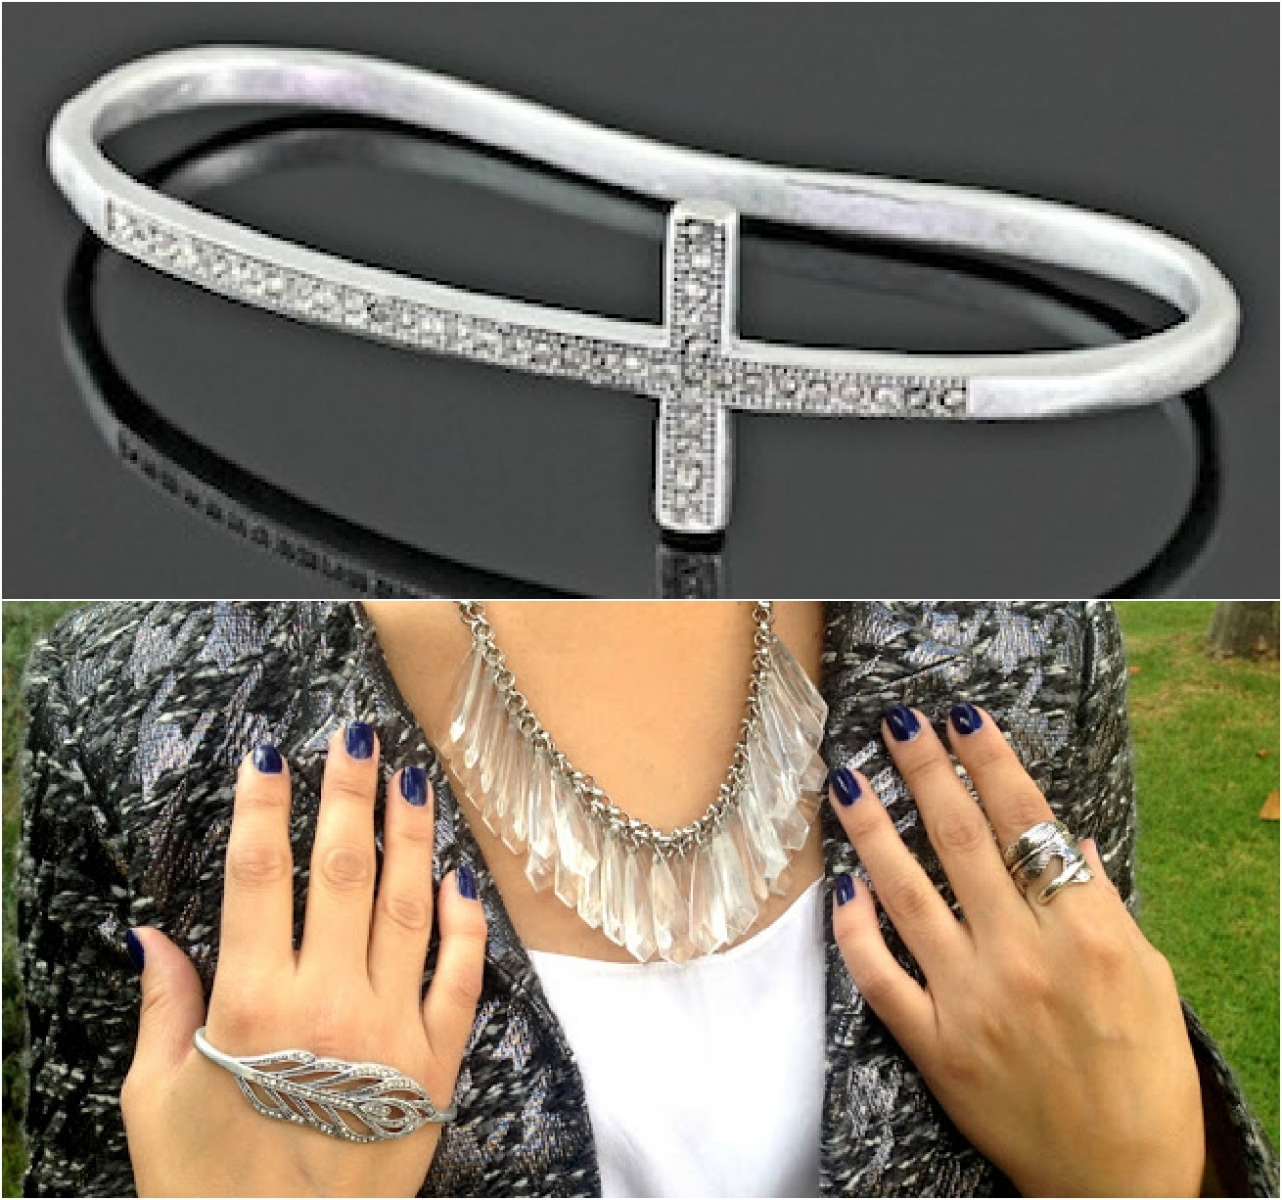 moda | acessórios | inverno 2013 | hand bracelet | compras | dicas de moda | bracelete de mão | dicas de acessórios para o inverno 2013 | Trend alert: hand bracelet